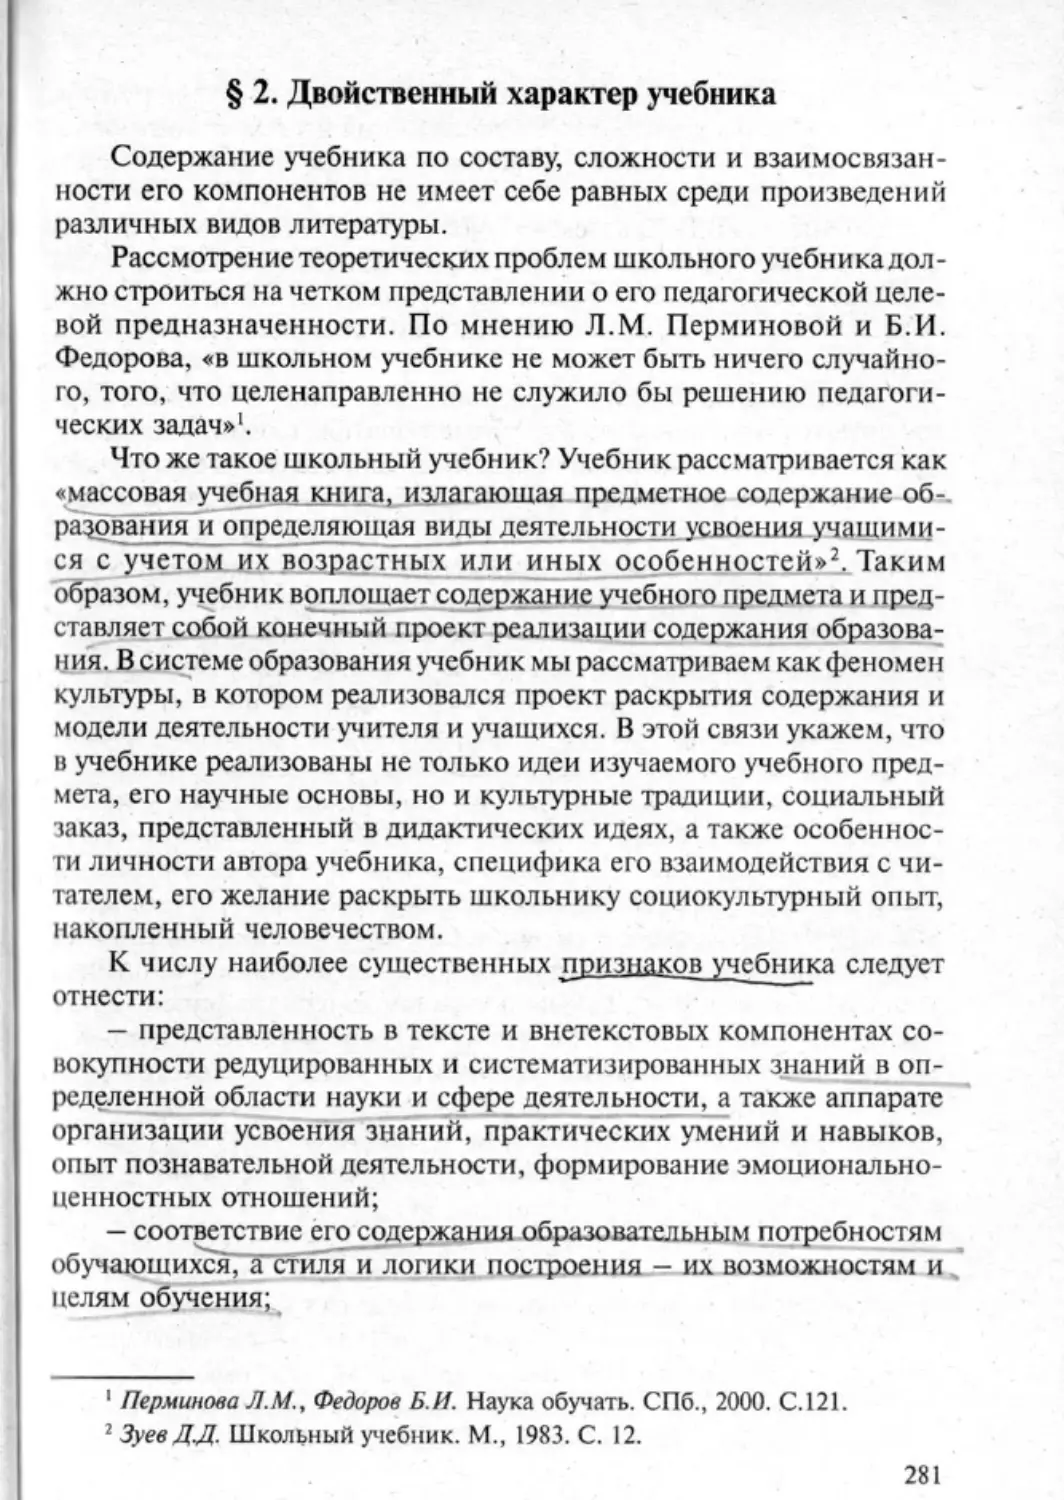 Загрекова Л.В., Николаева В.В - 0282